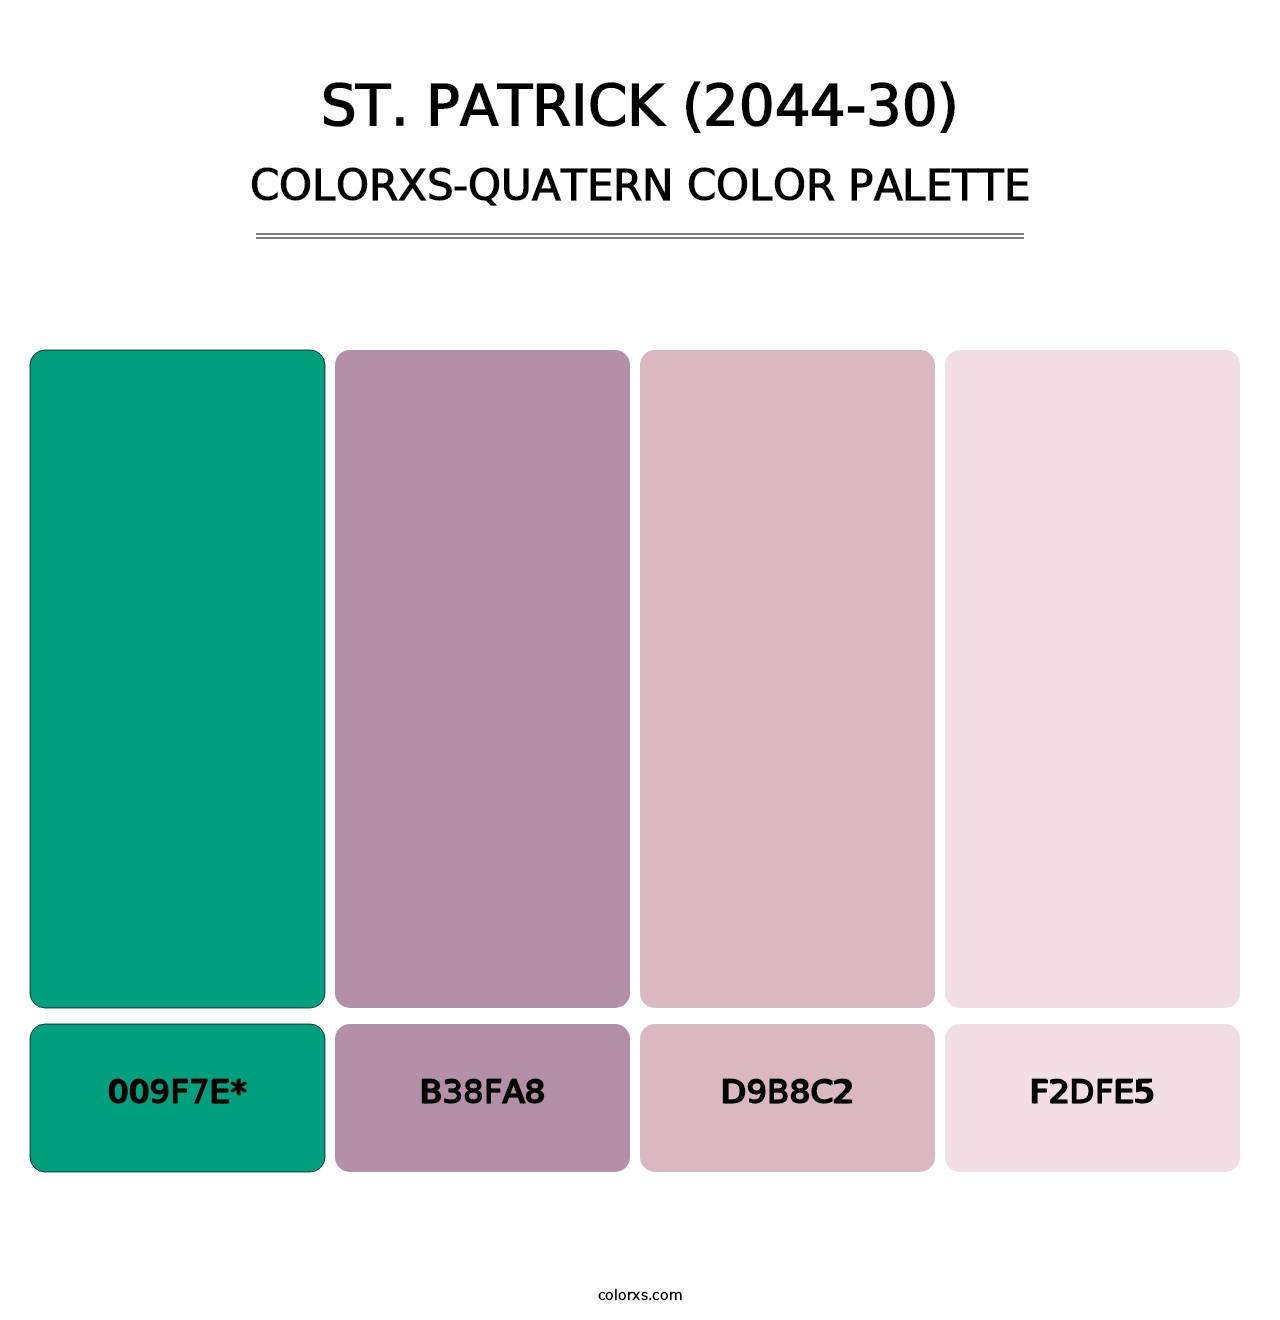 St. Patrick (2044-30) - Colorxs Quatern Palette